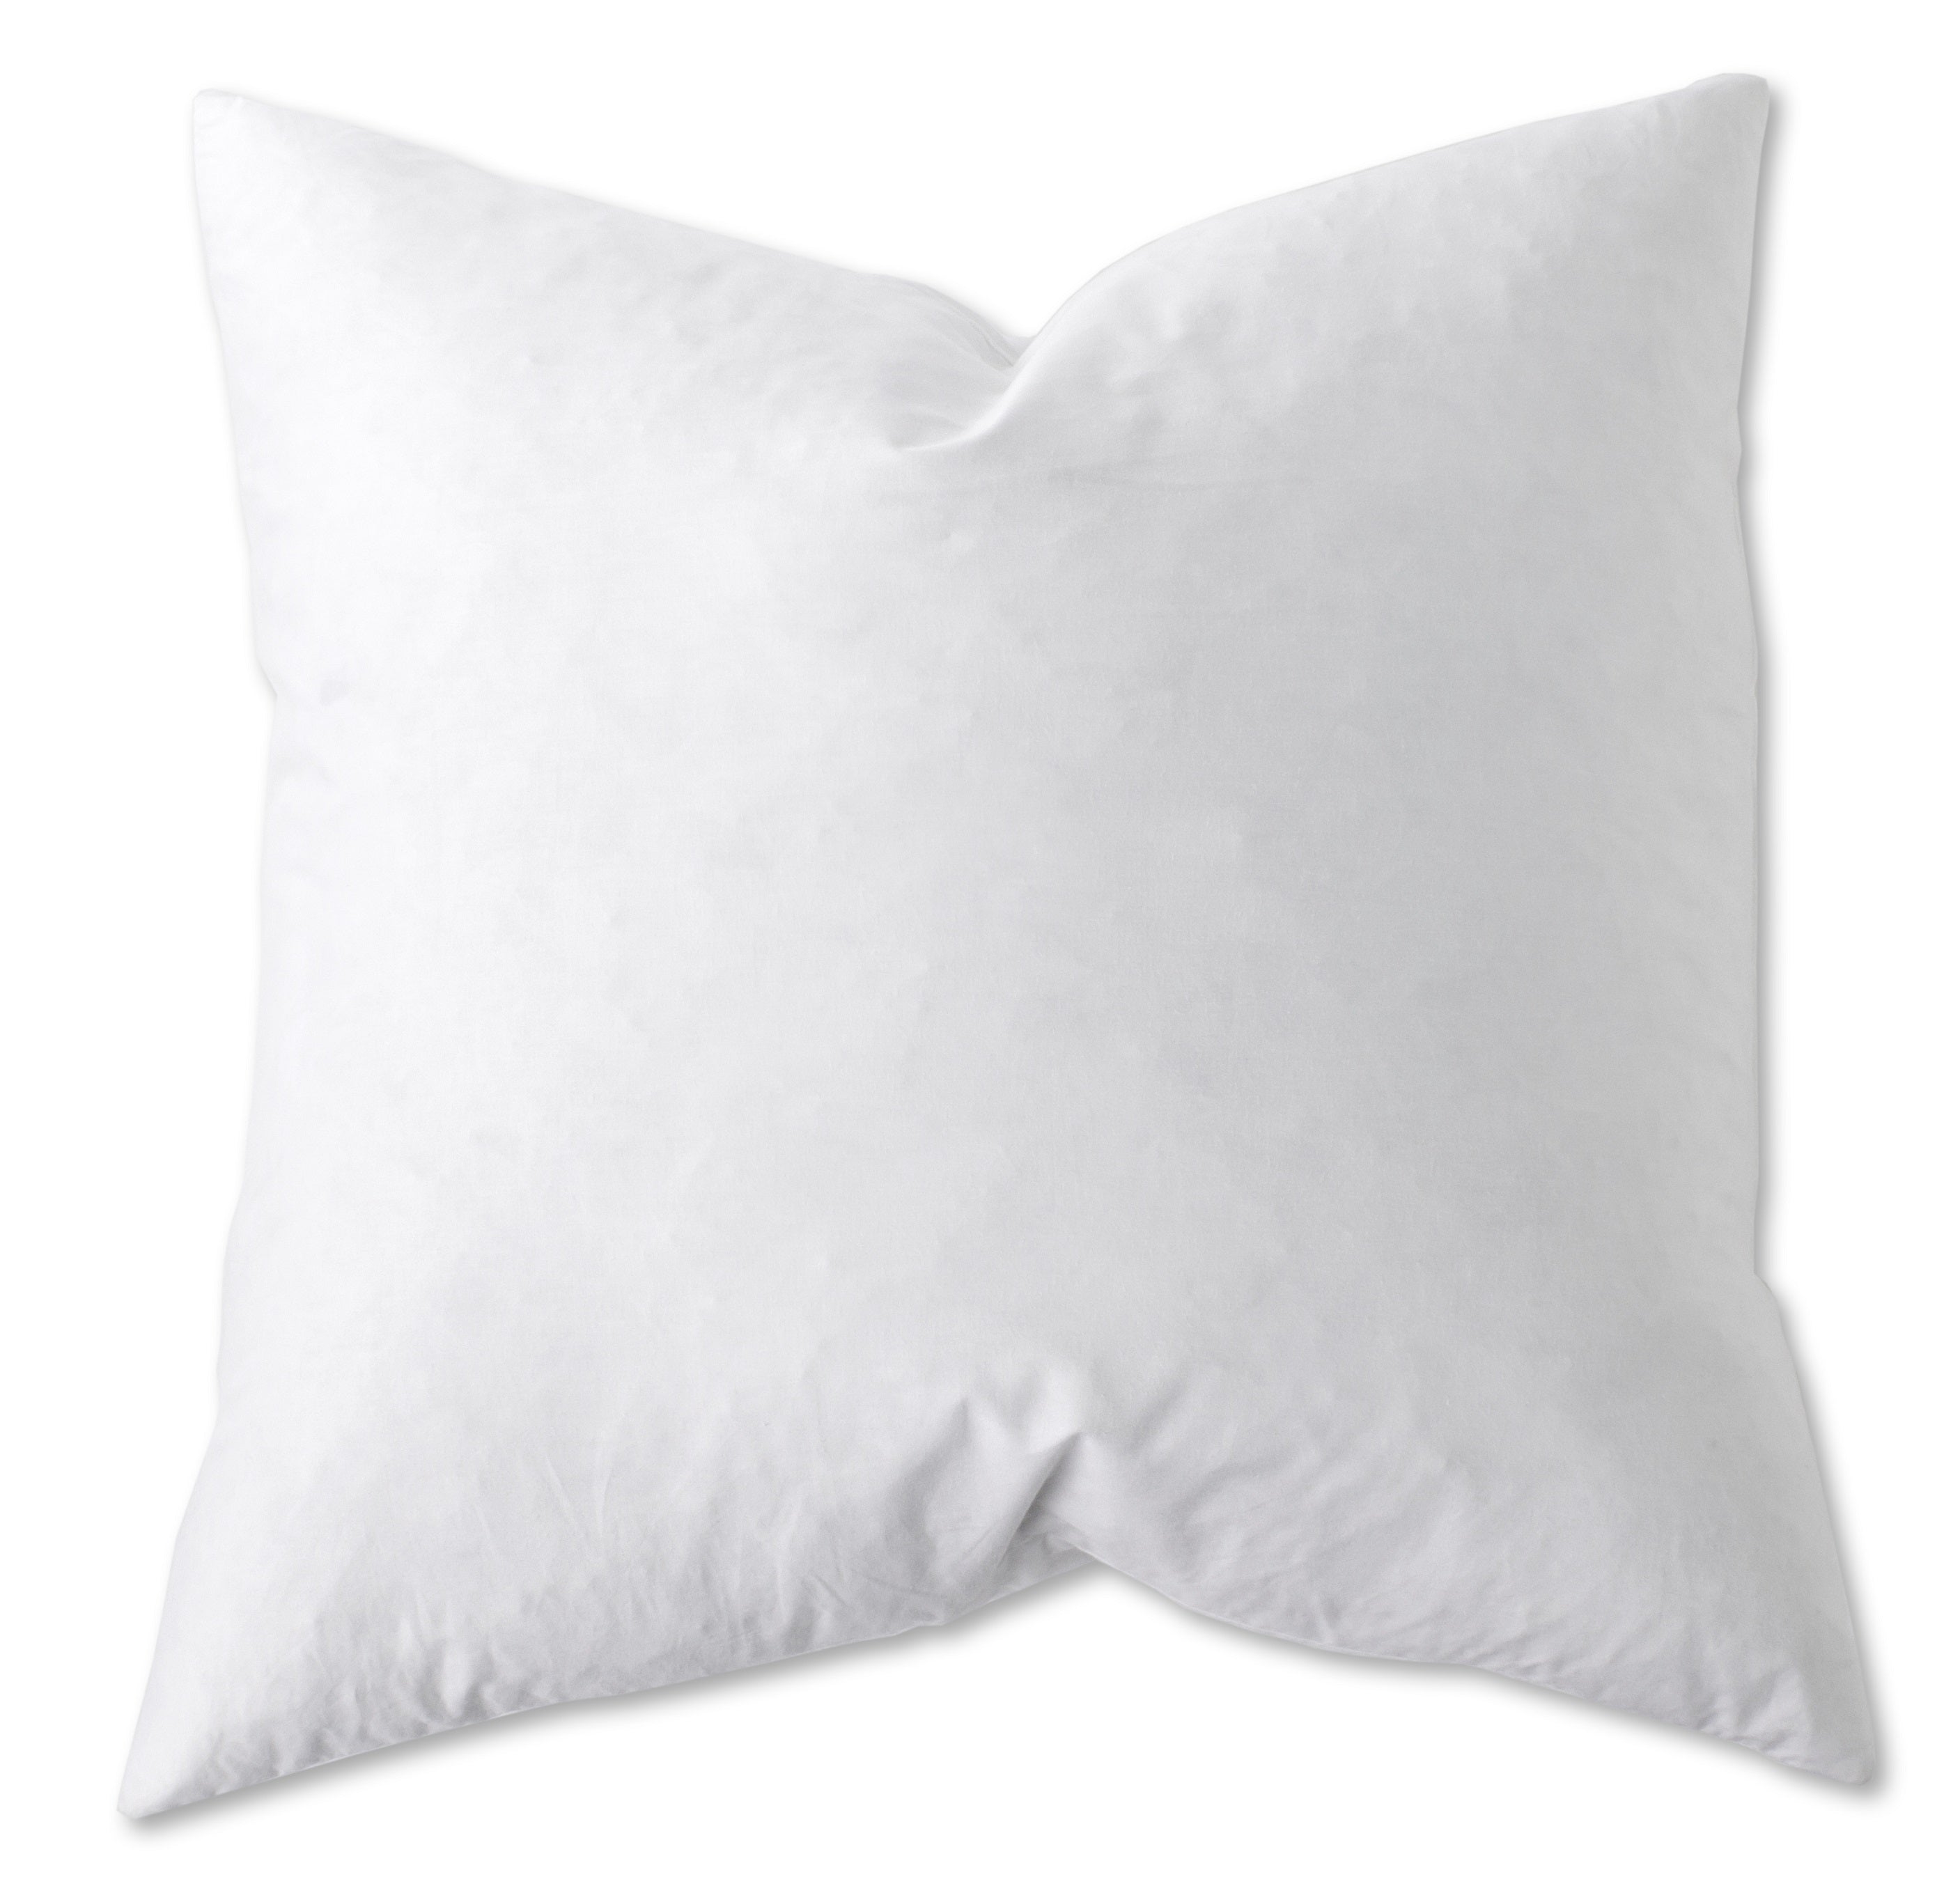 19x19 Pillow Form